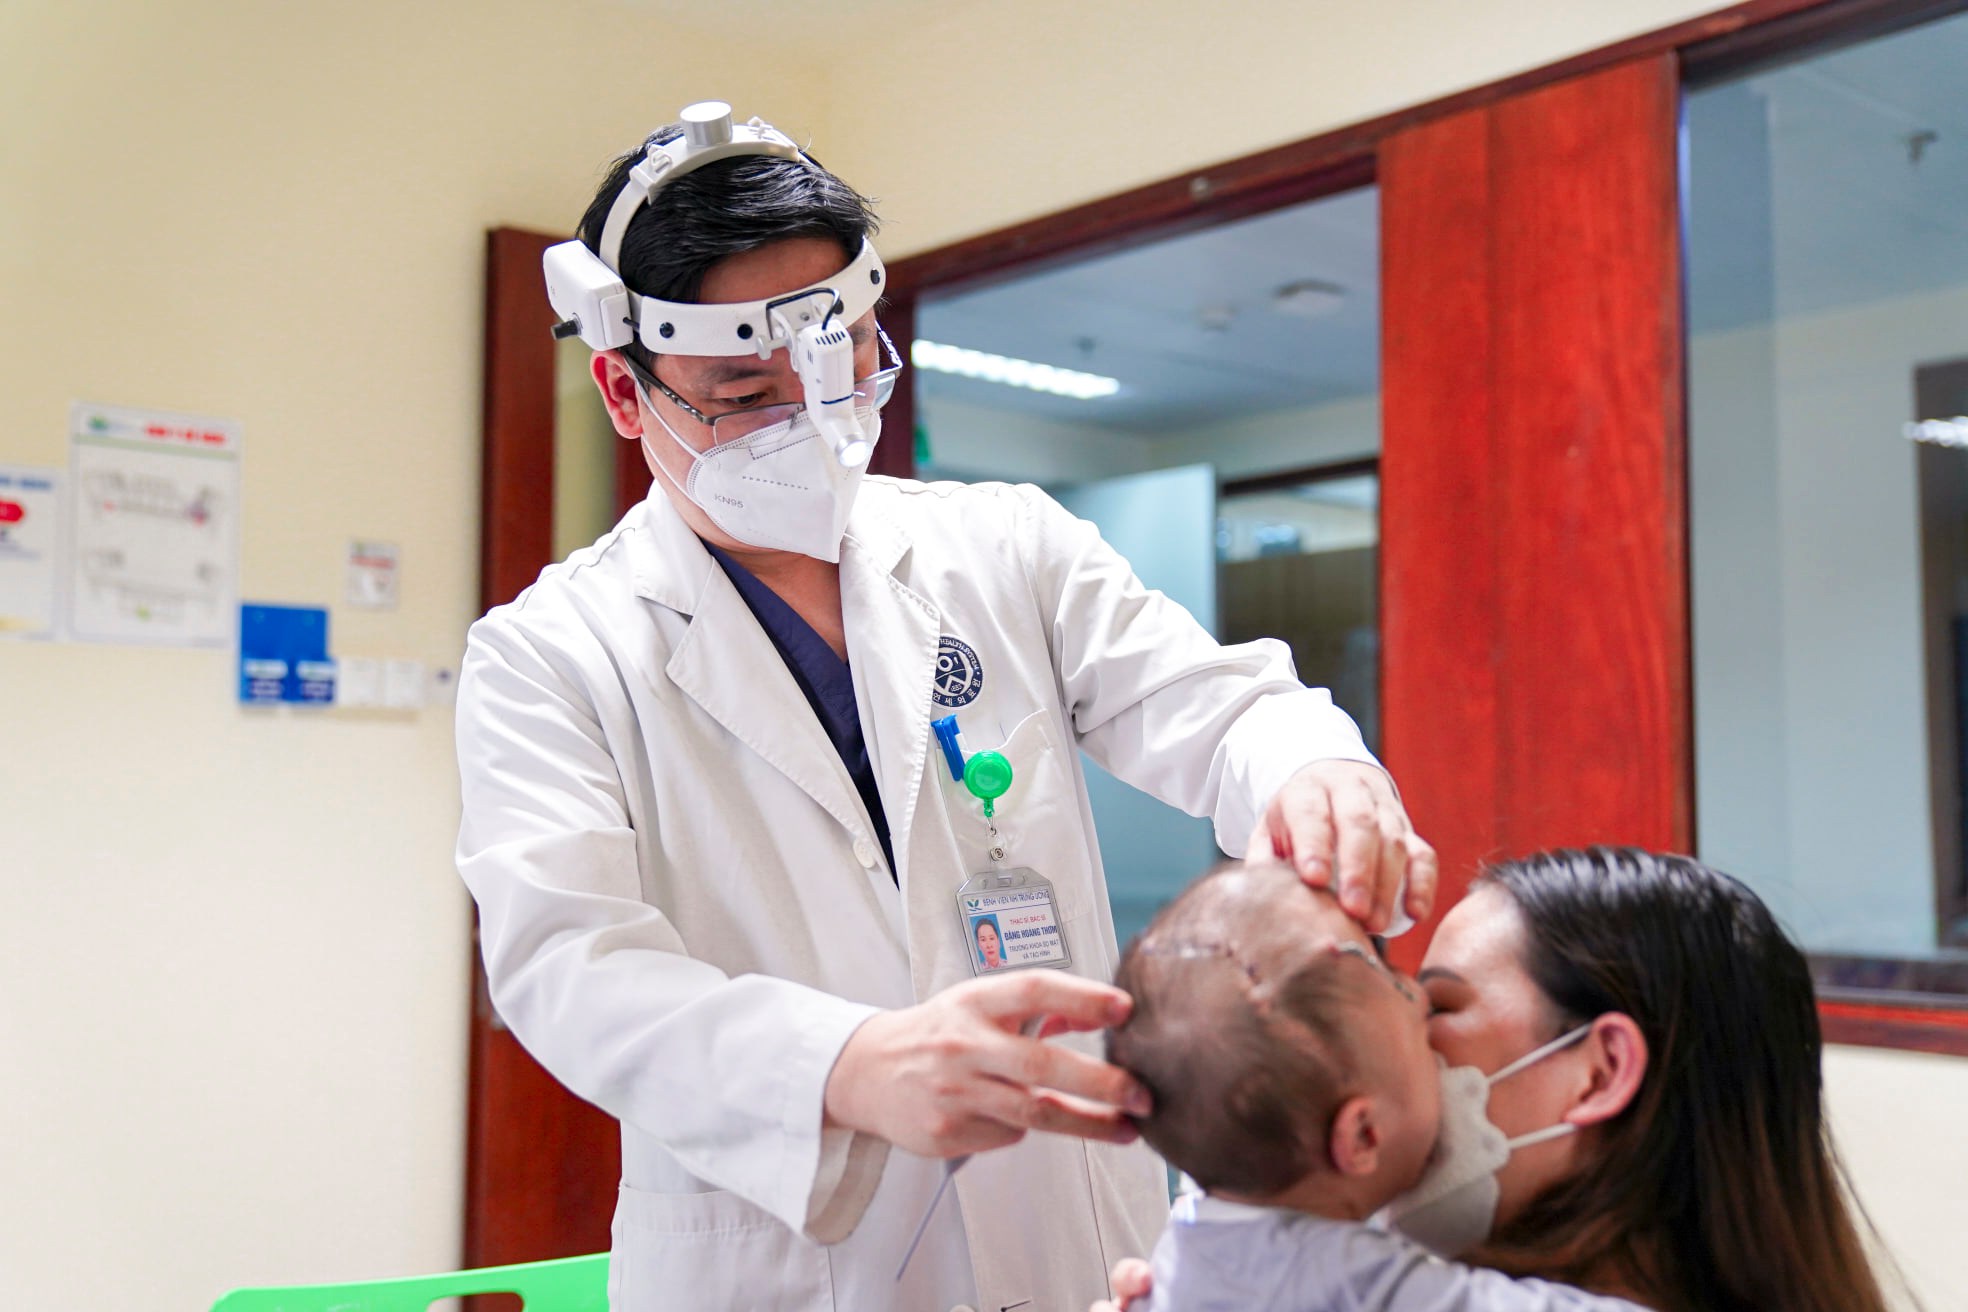 Bằng phương pháp mới, bác sĩtái tạo hình dạng hộp sọ cho bé gái 16 tháng mắc dị tật sọ mặt hiếm gặp  - Ảnh 4.